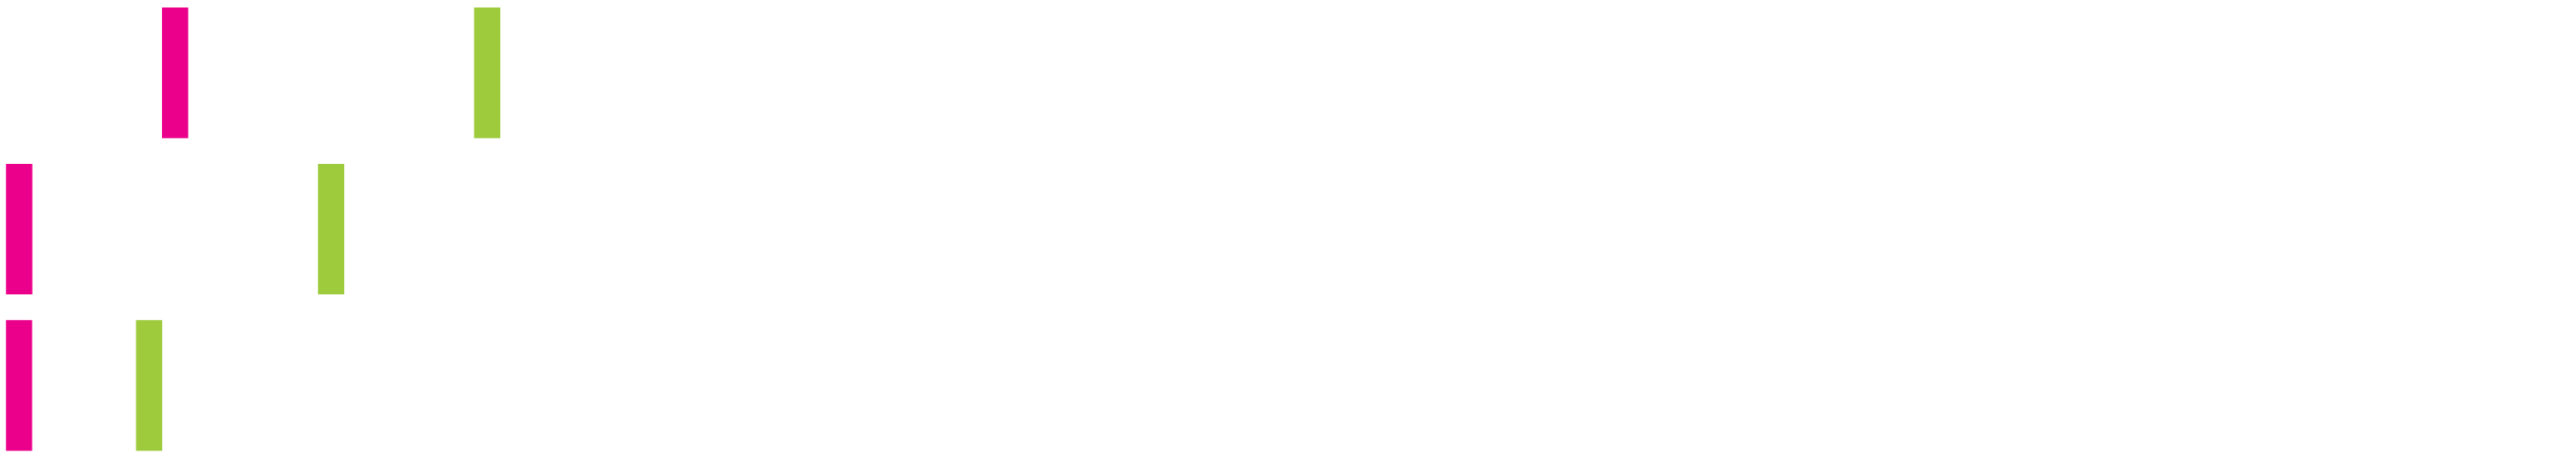 Logo du Centre des Compétences futures